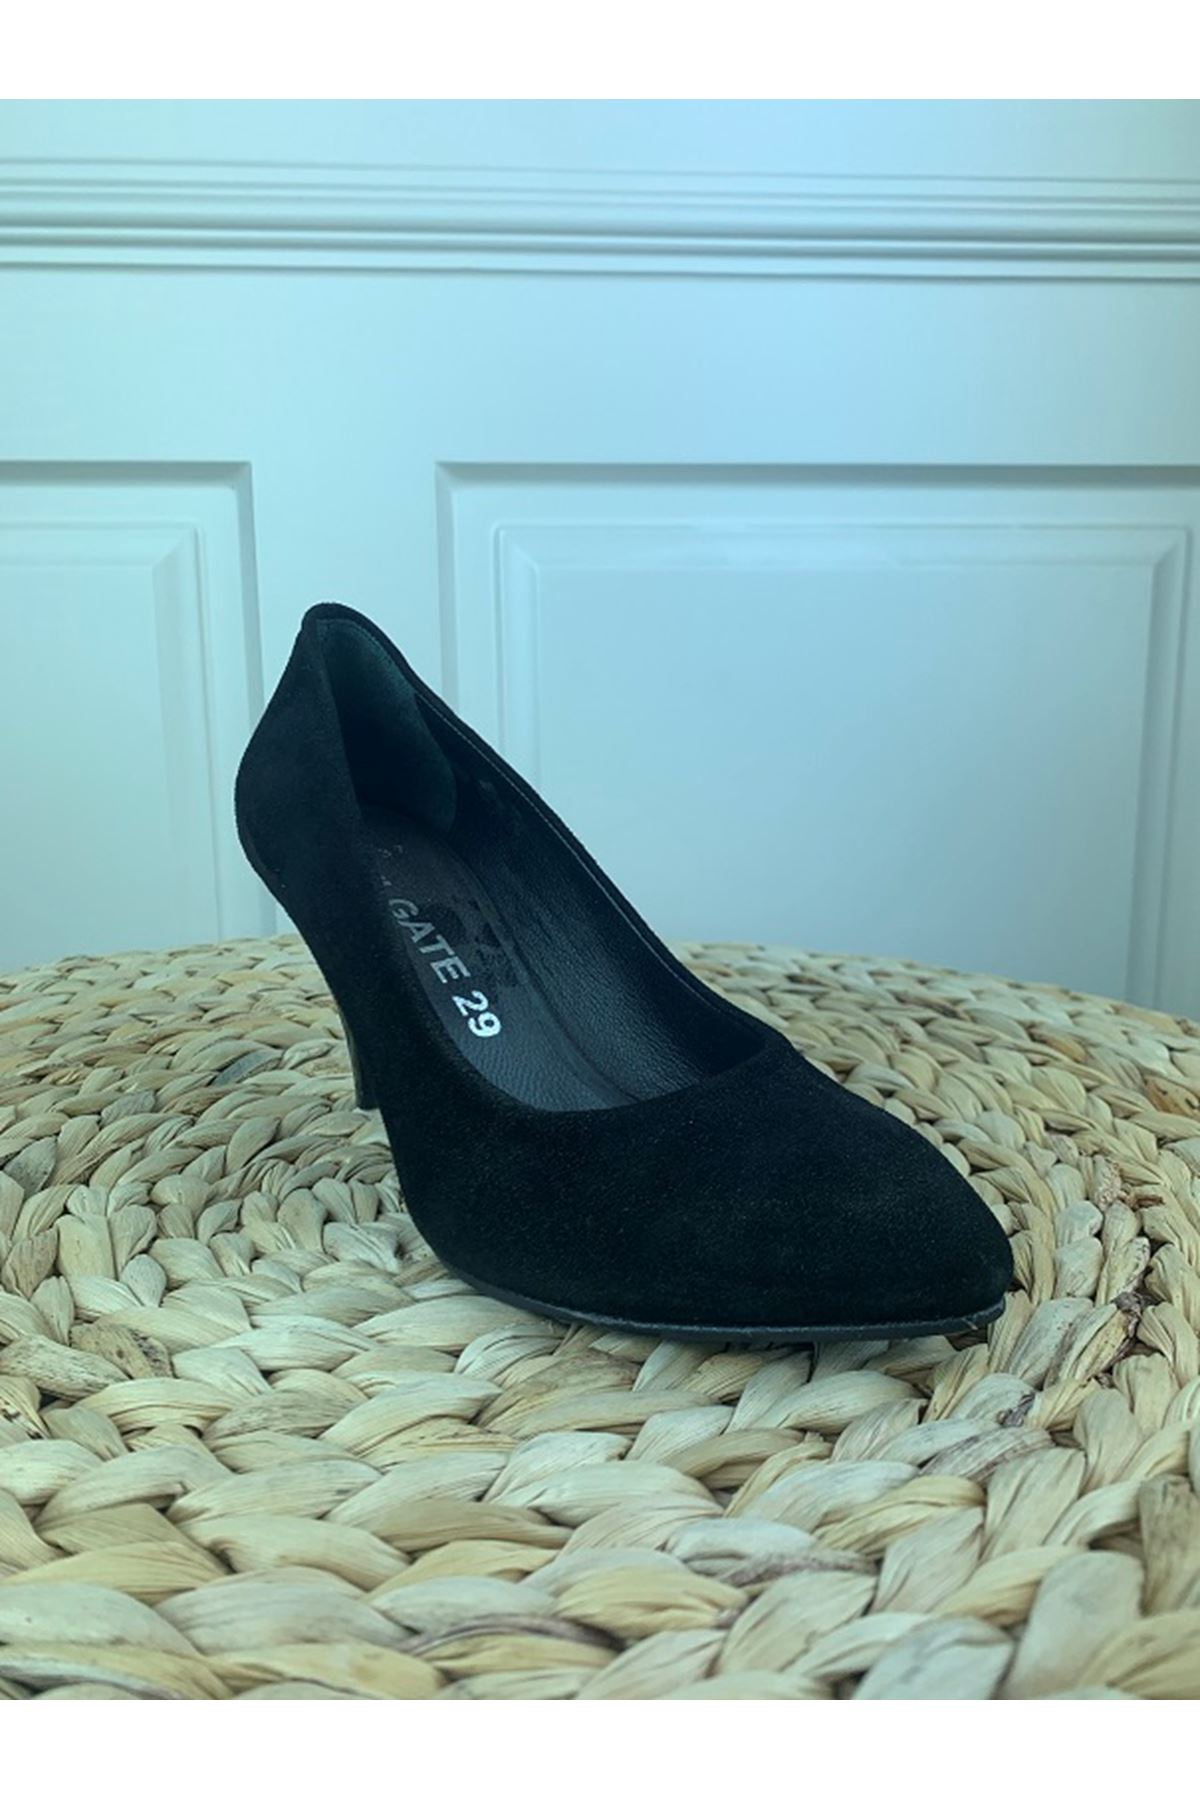 Hakiki Deri Kadın Deri Topuklu Ayakkabı 1784 Gate Shoes -Süet Siyah